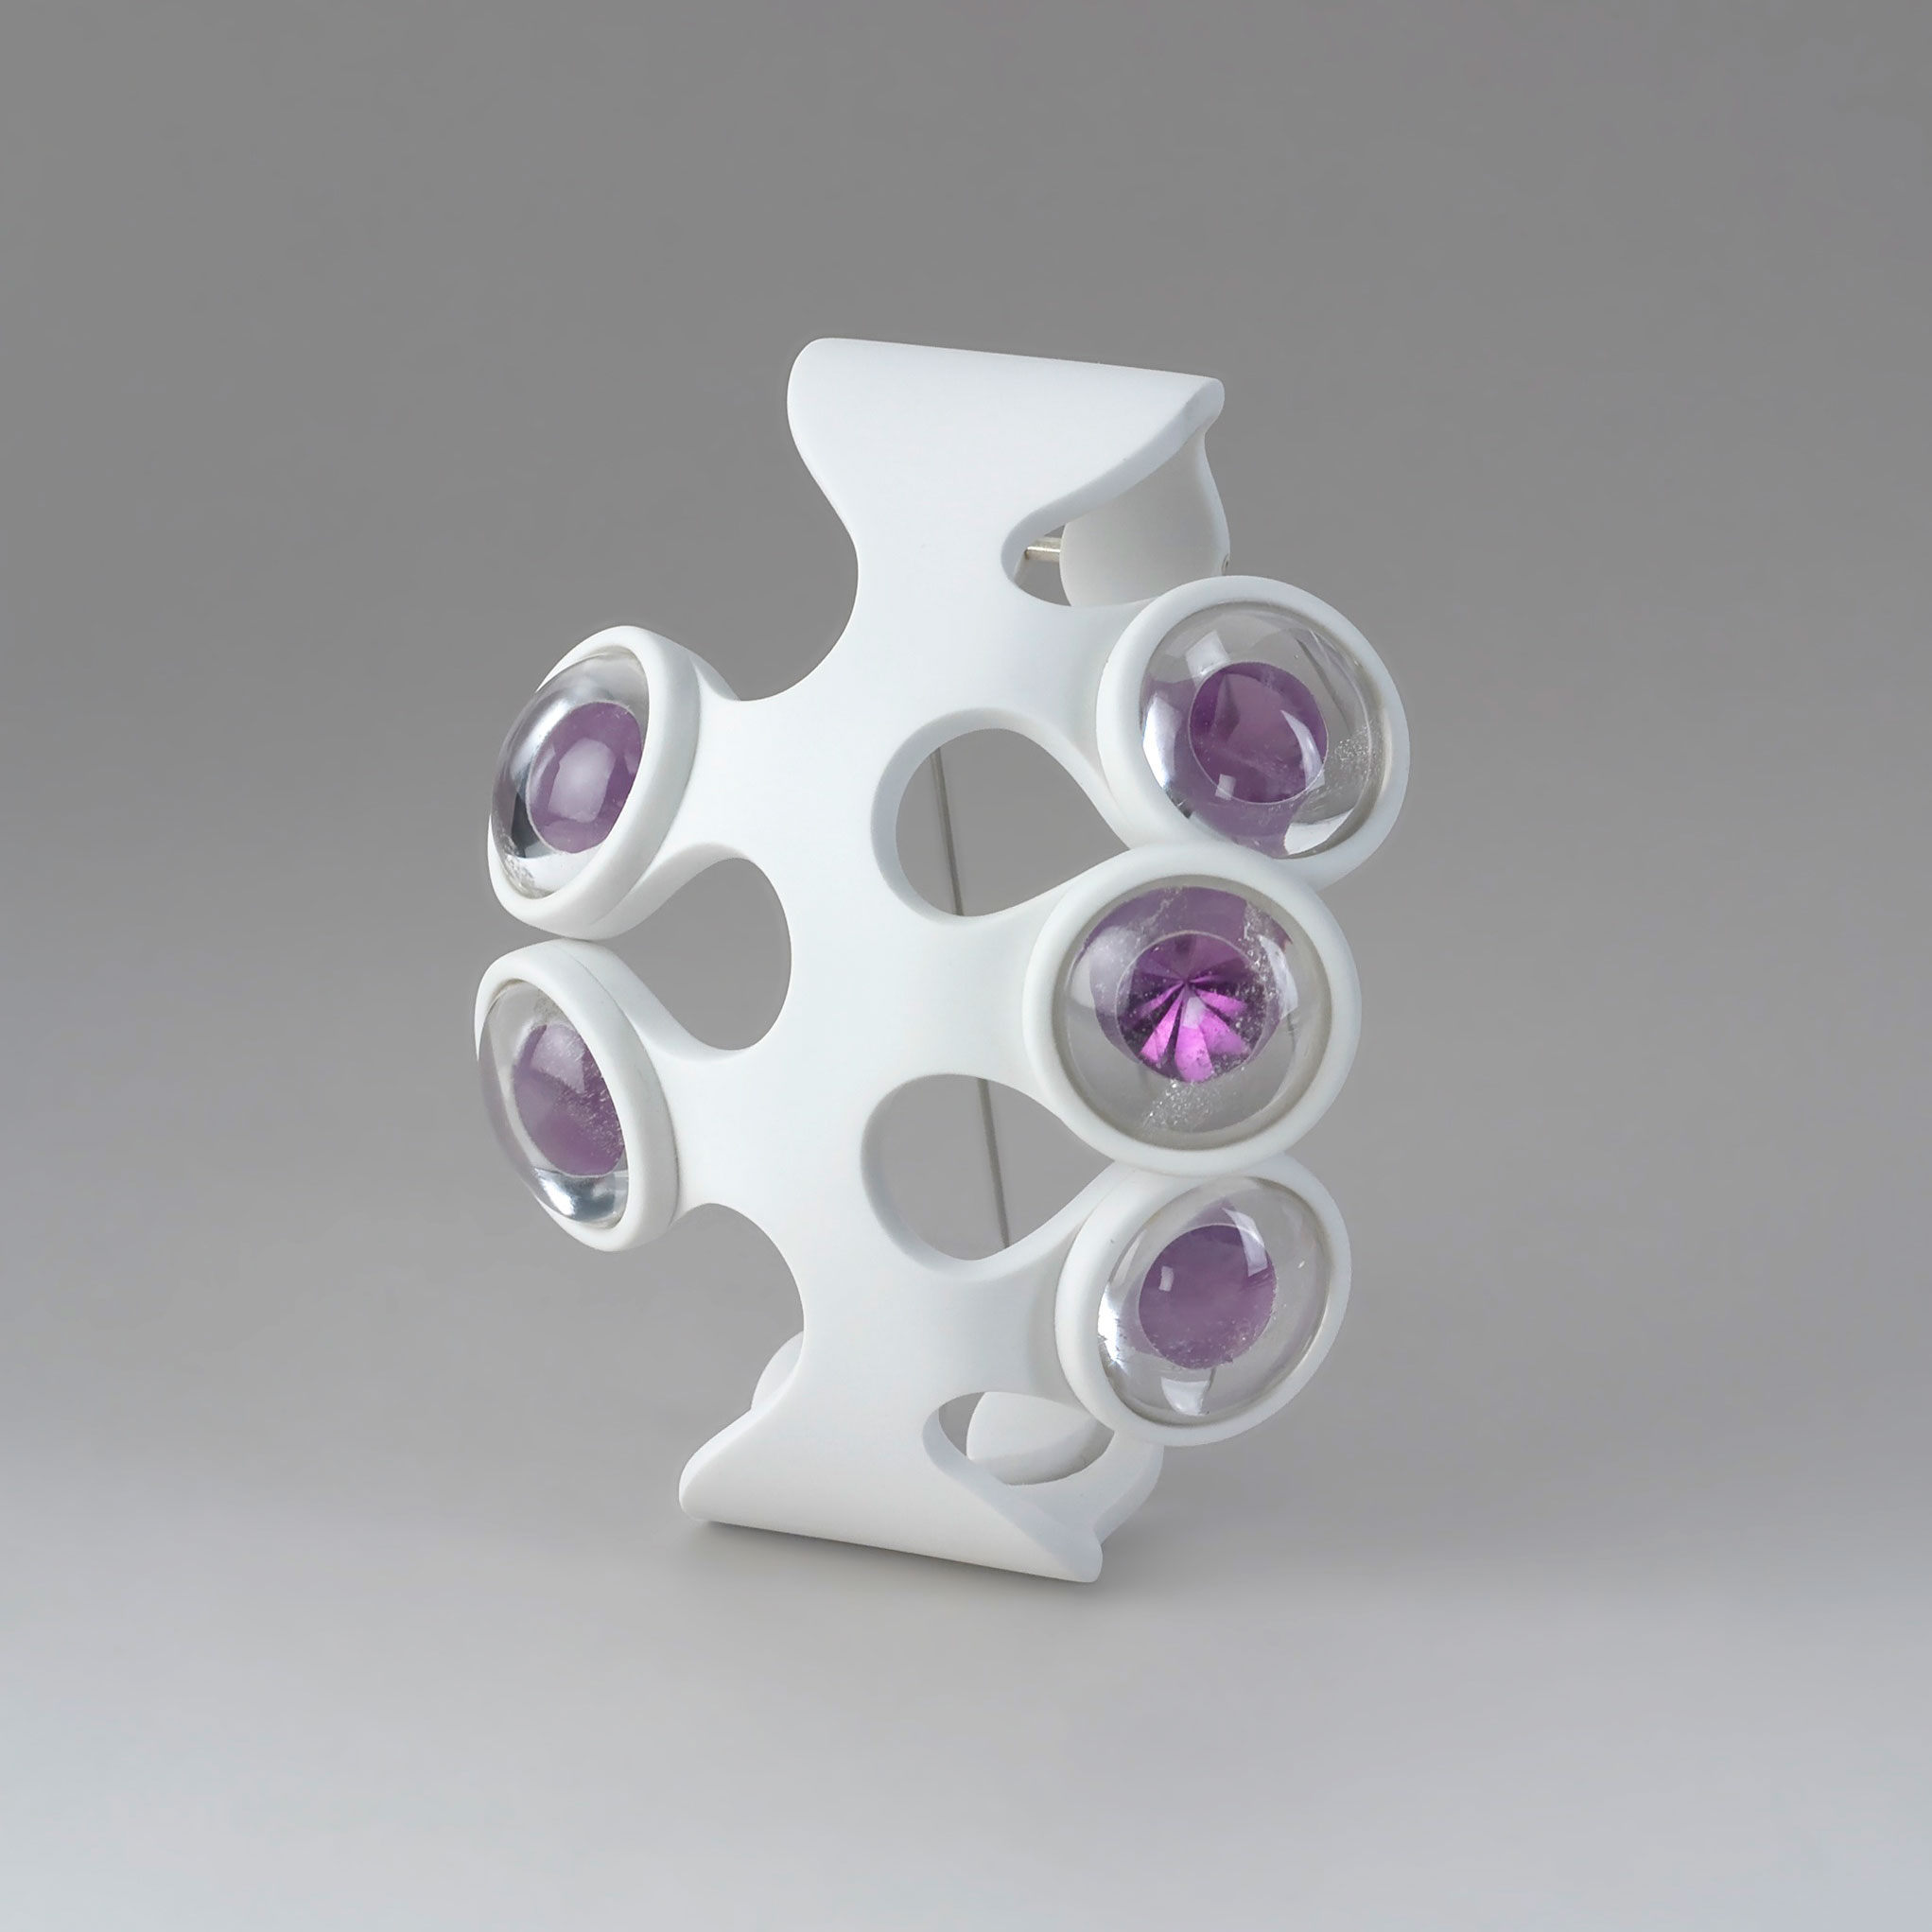 Alexander Friedrich. Sans titre, 2012. Cristal de roche, améthyste, argent, polystyrène, vernis. 10 × 9 × 4 cm